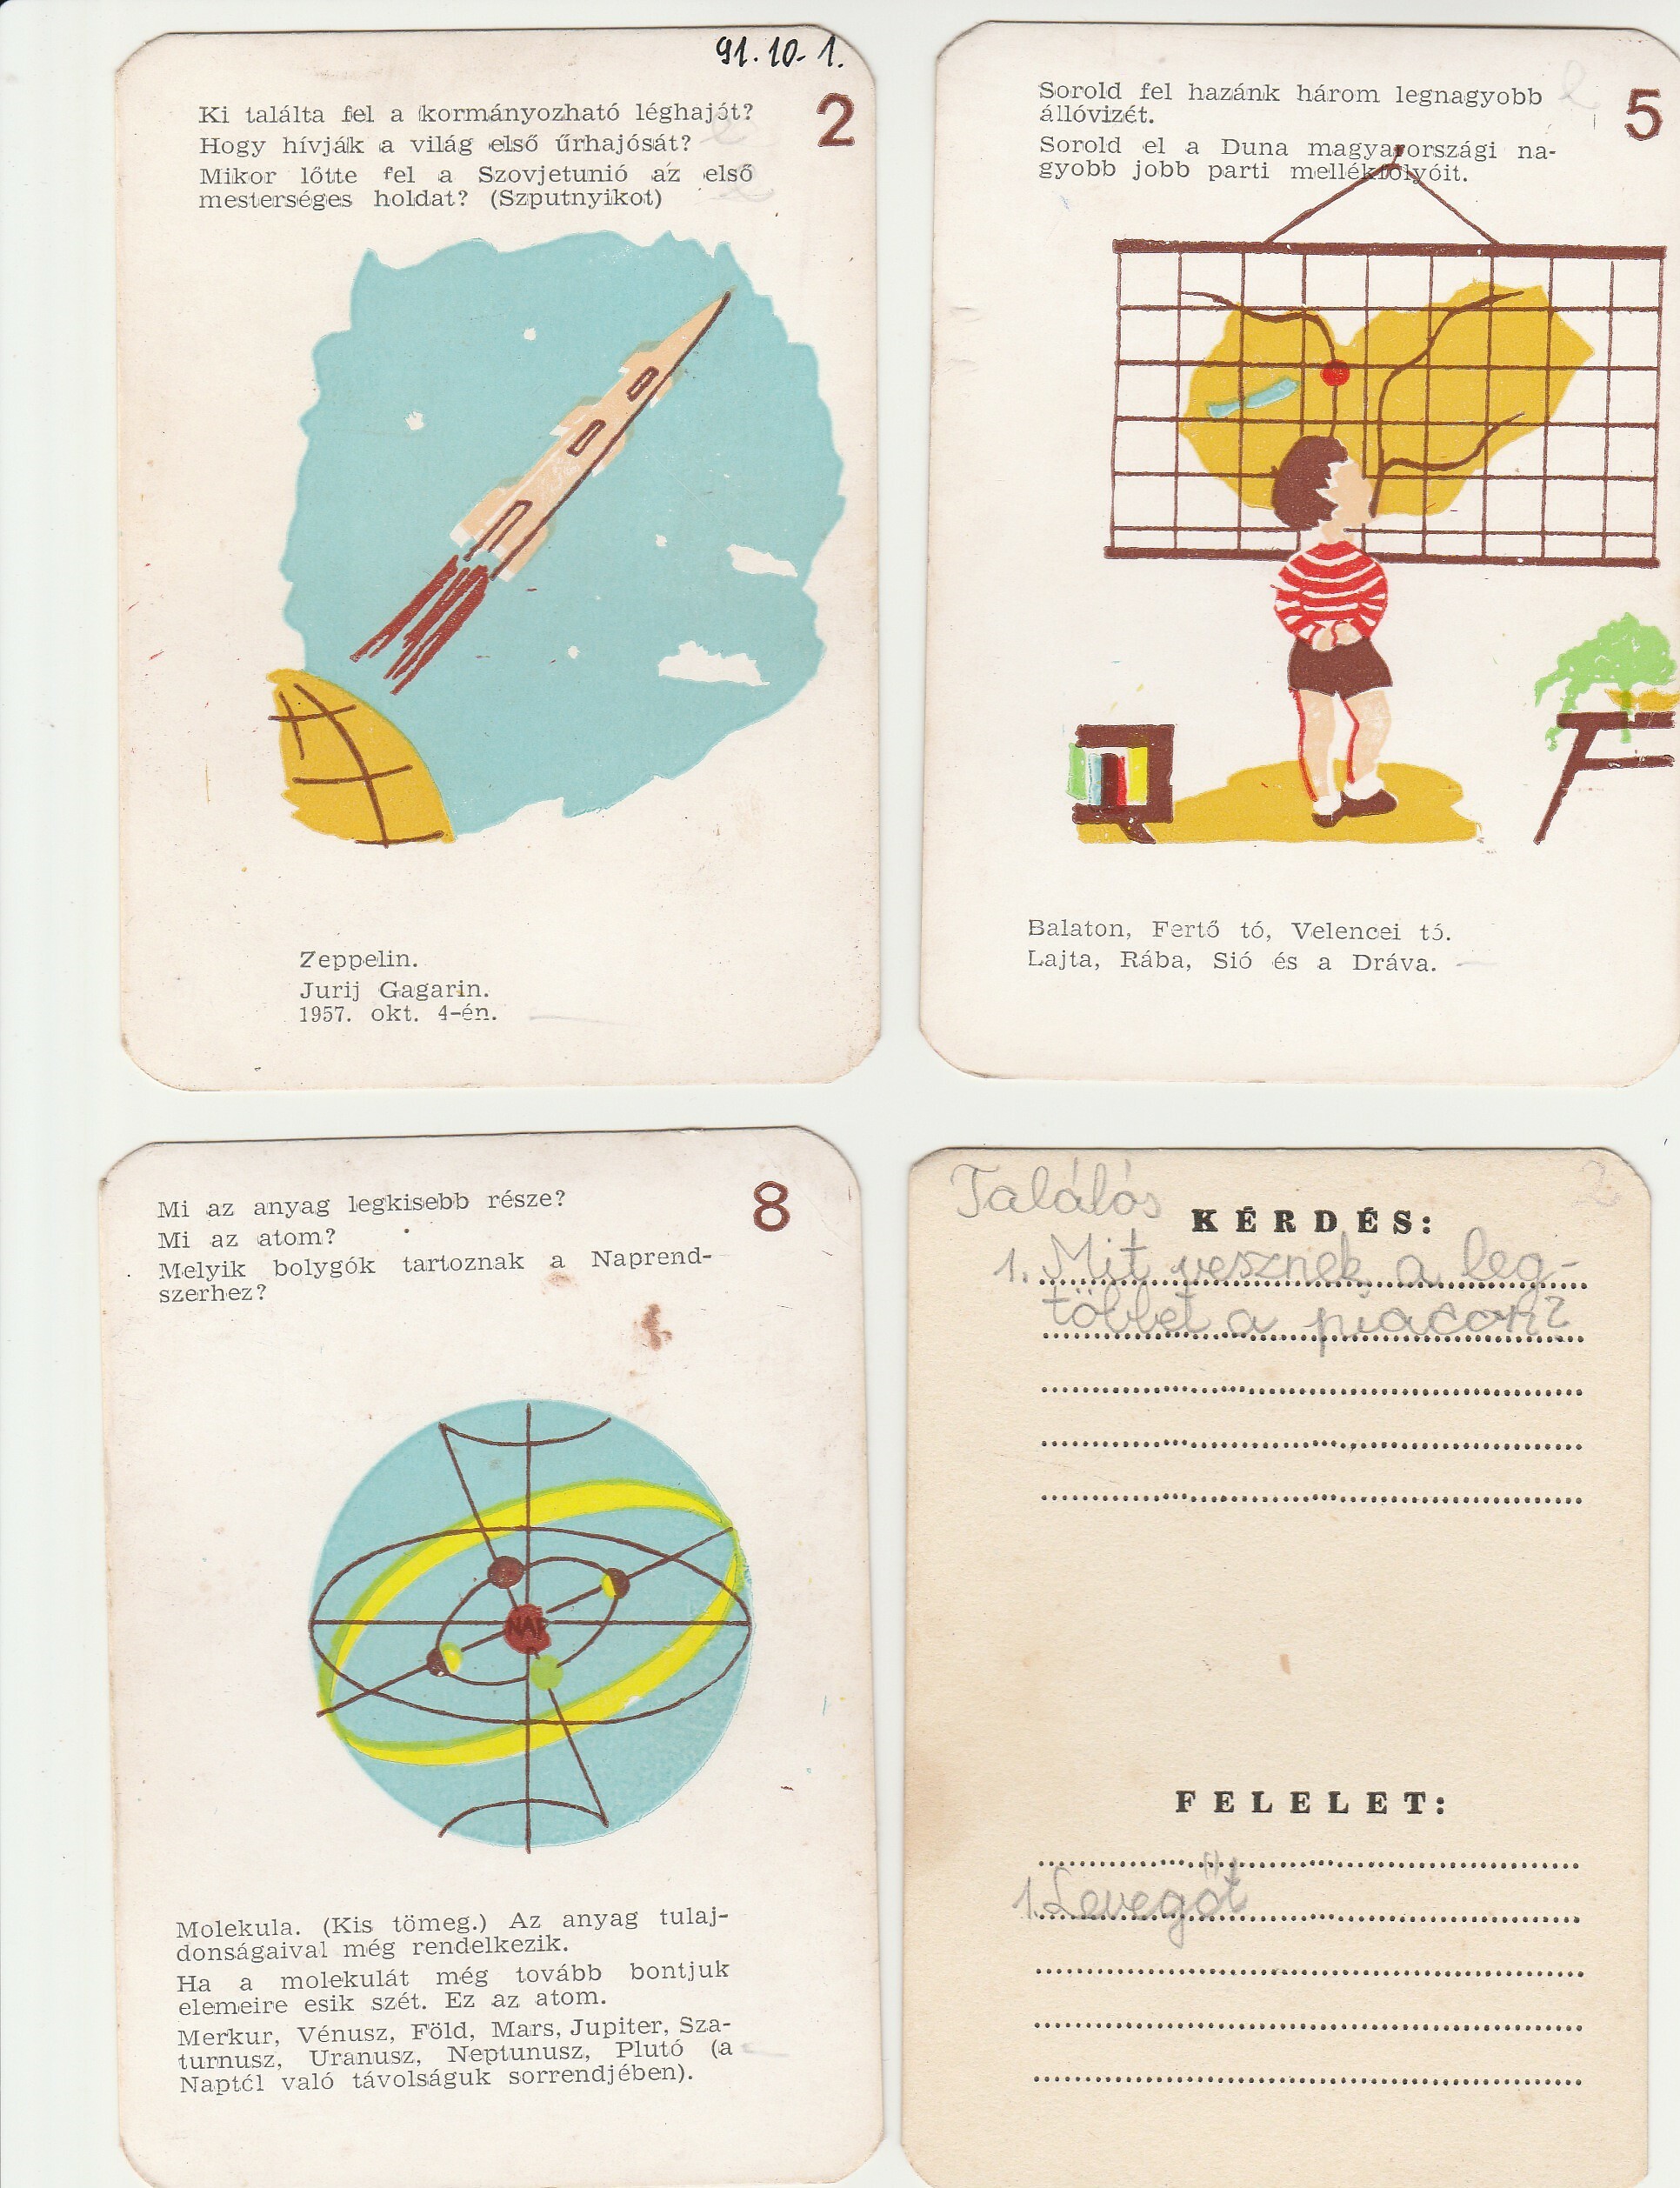 Iskolai kérdezz-felelek játék kártyái (Tapolcai Városi Múzeum CC BY-NC-SA)